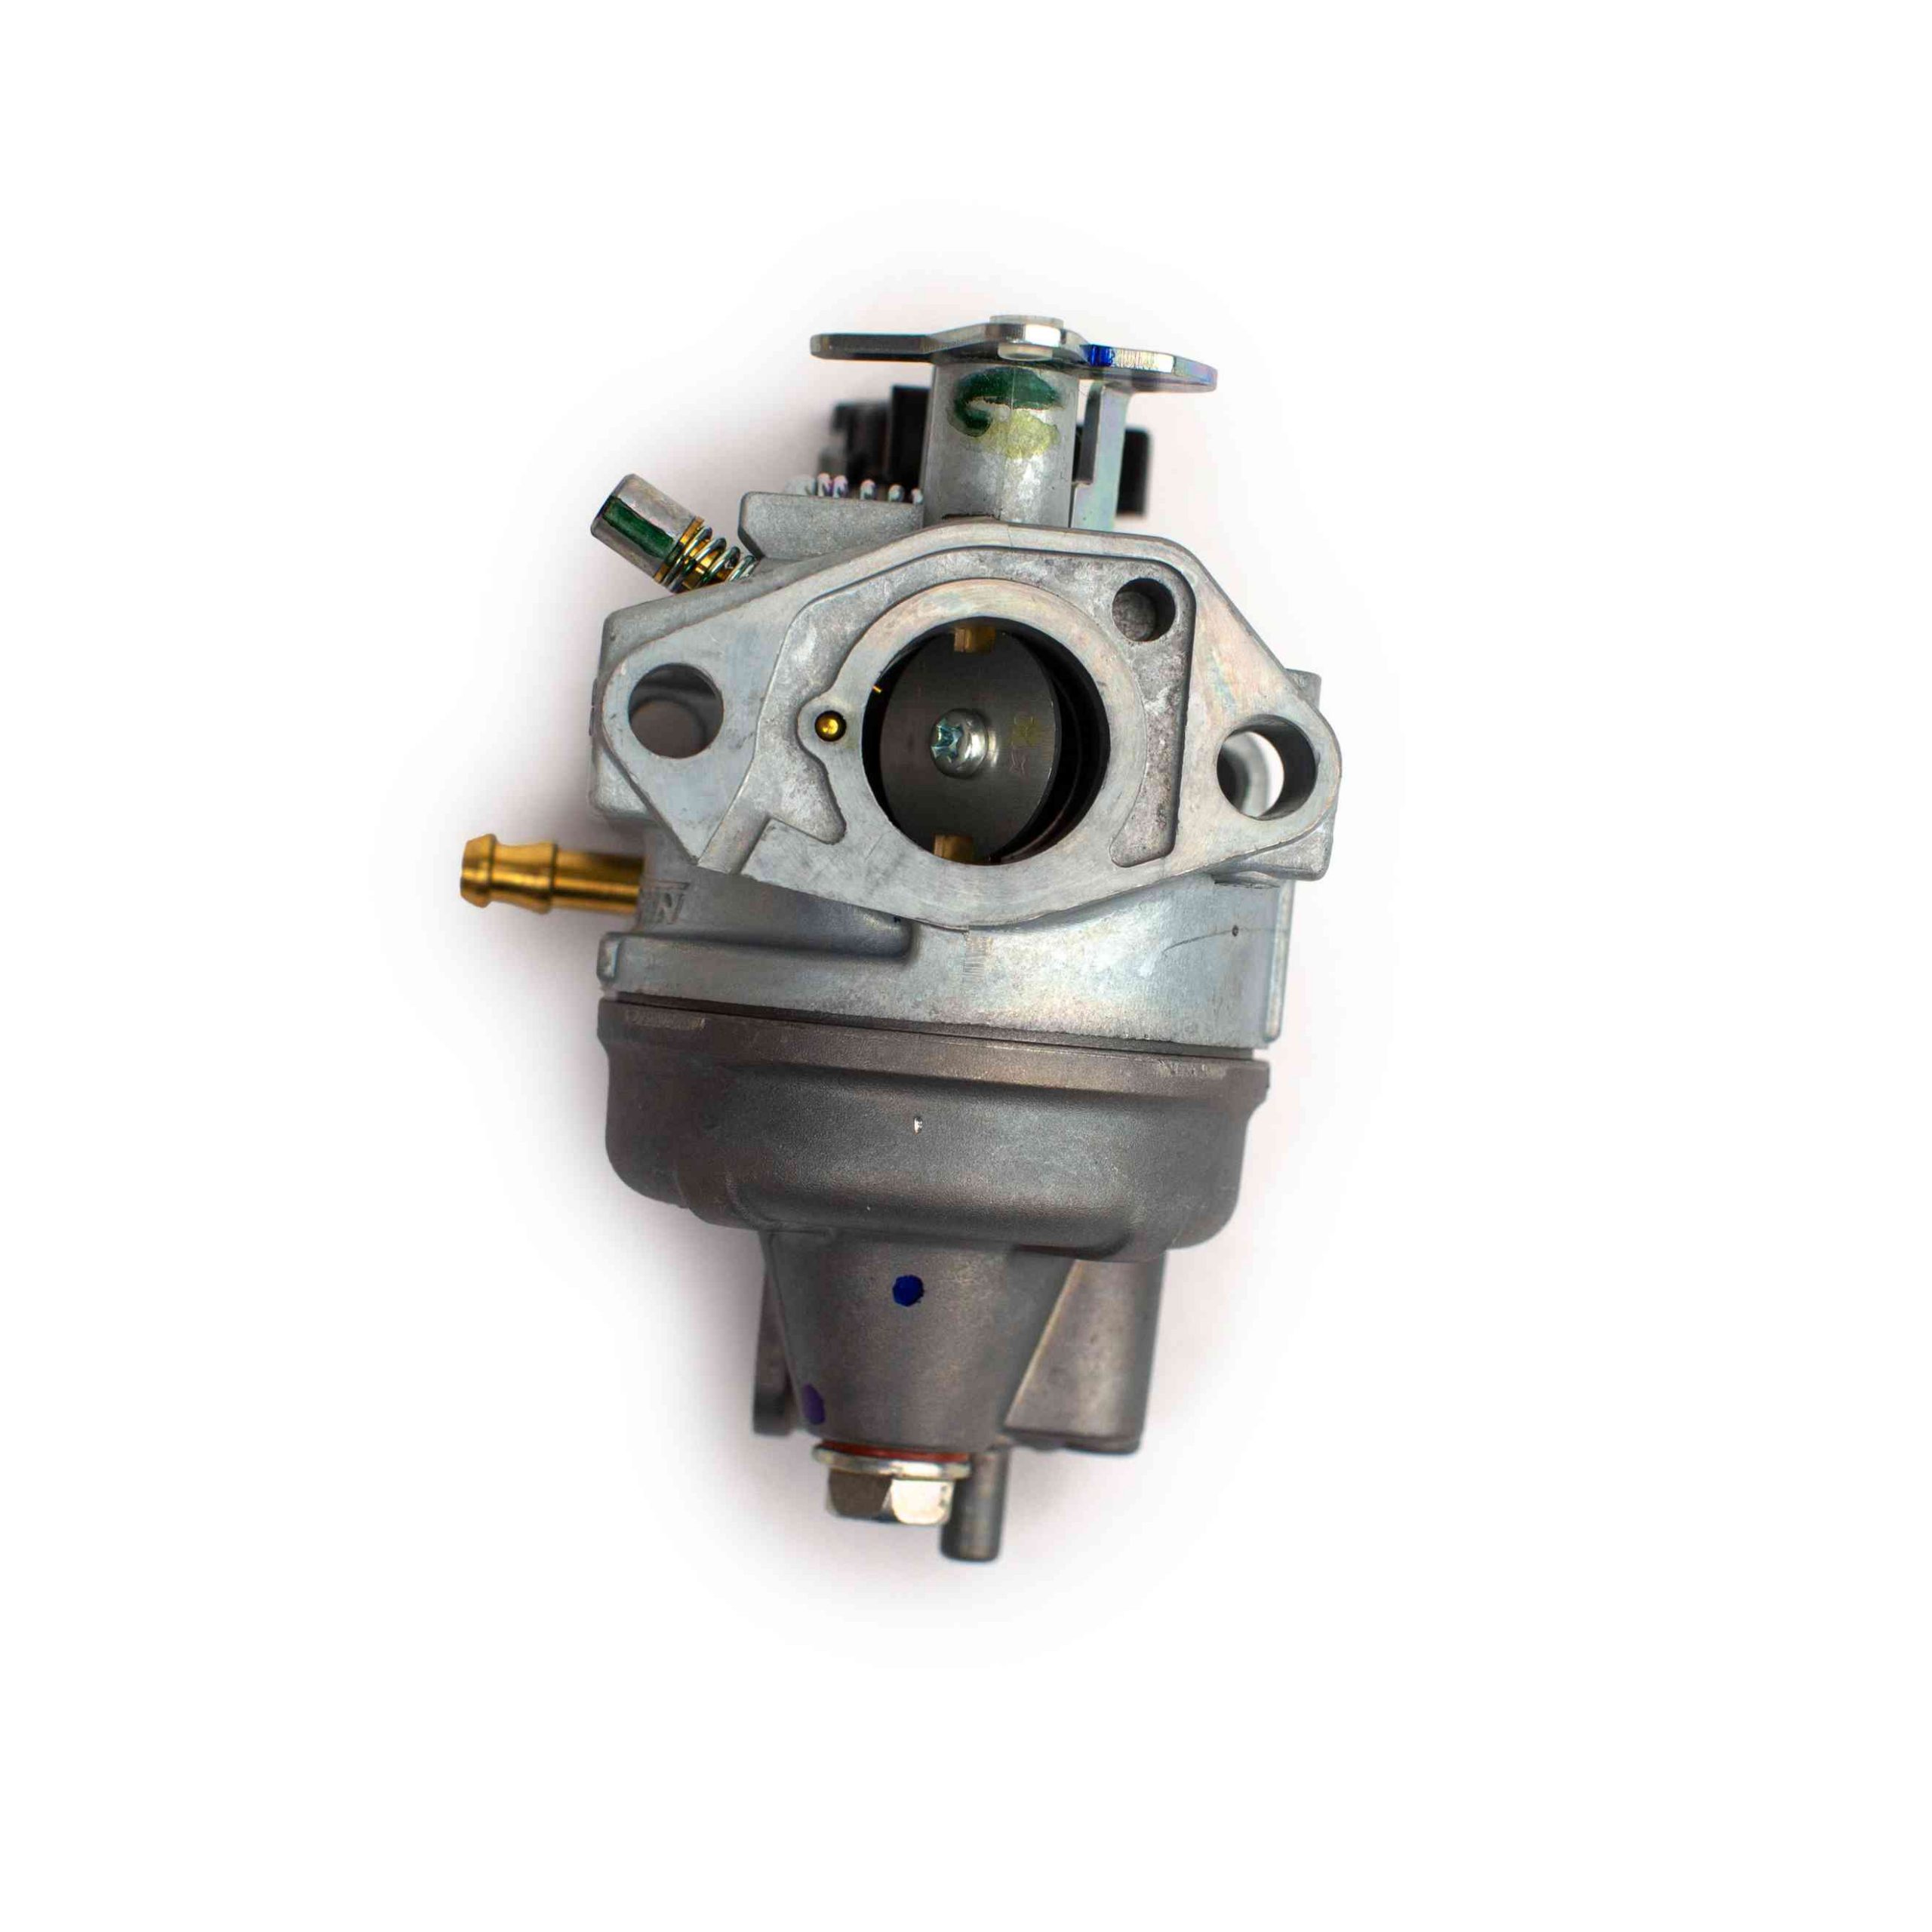 16100-Z0J-013 Carburetor Replace # 16100-Z0J-013 for Honda GC160 GC160A GC160LA GC160LE Engines with 17211-zl8-023 Air Filter Kit 